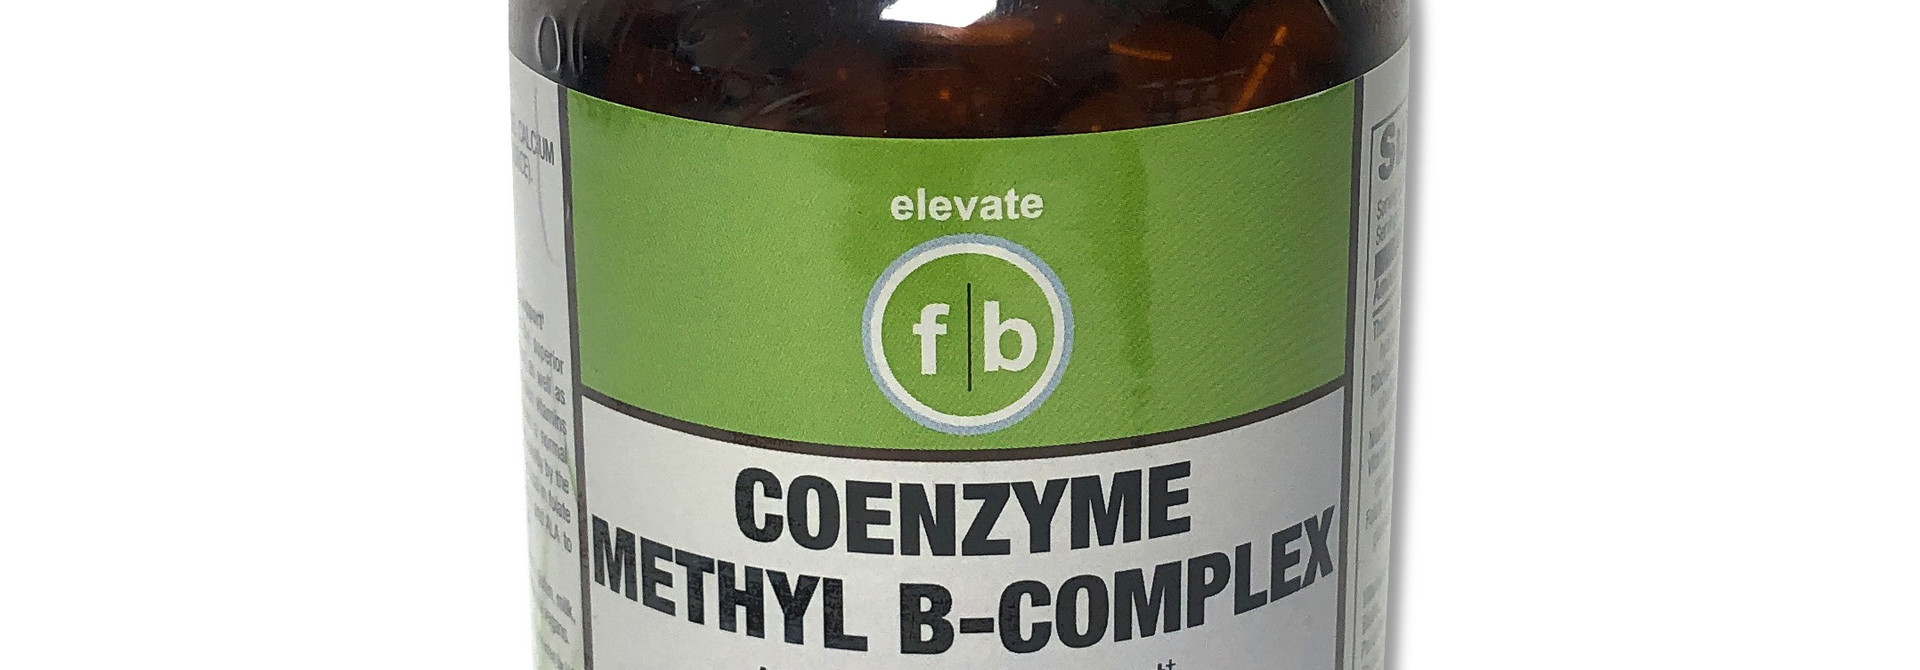 FLATBELLY COENZYME METHYL B-COMPLEX